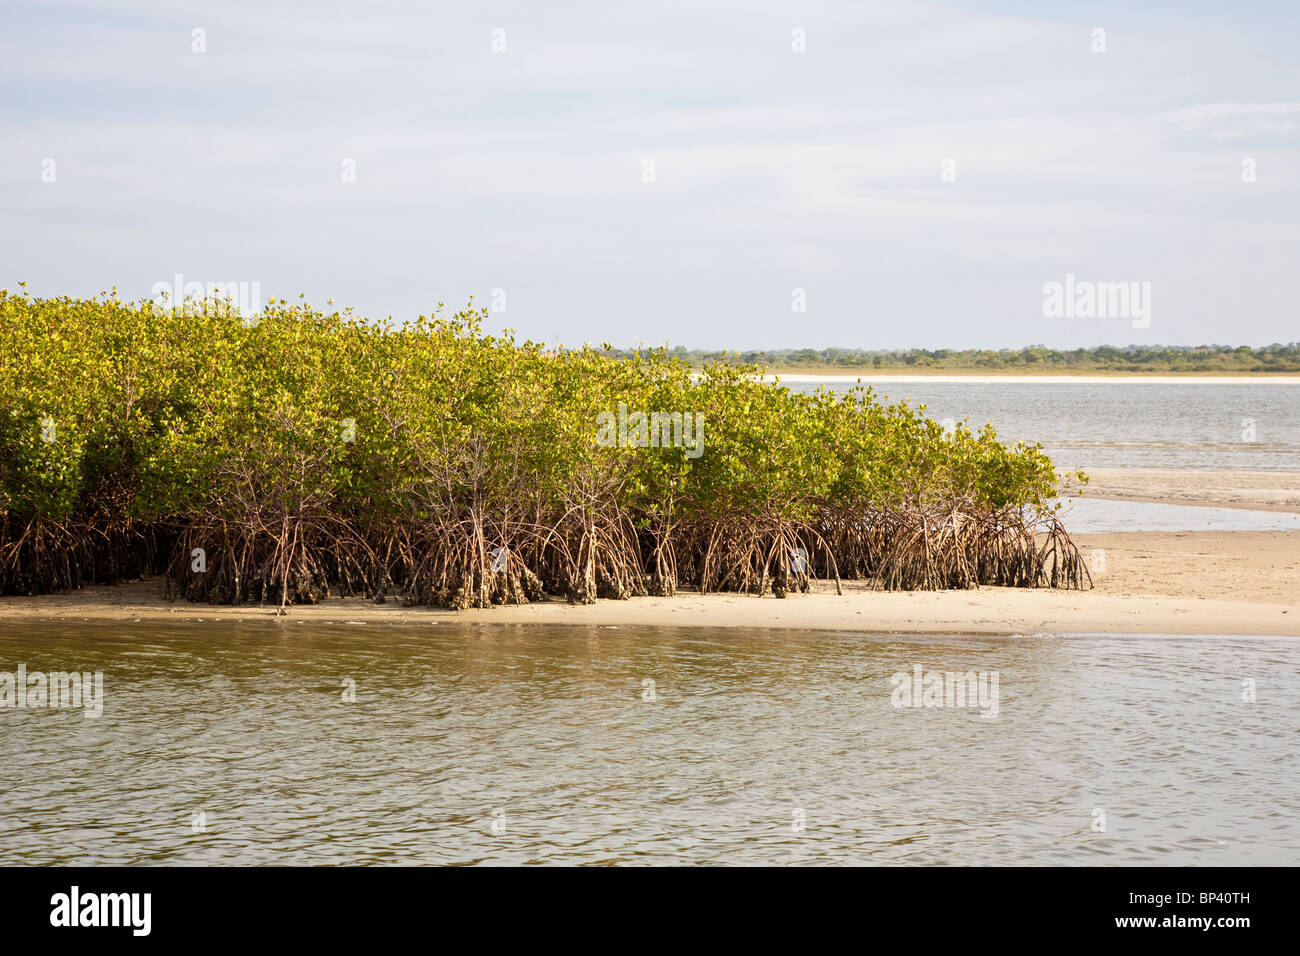 Ponce Inlet, FL - Mai 2010 - Mangroven-Bäume wachsen in den flachen Küstengewässern entlang Ponce Inlet Stockfoto